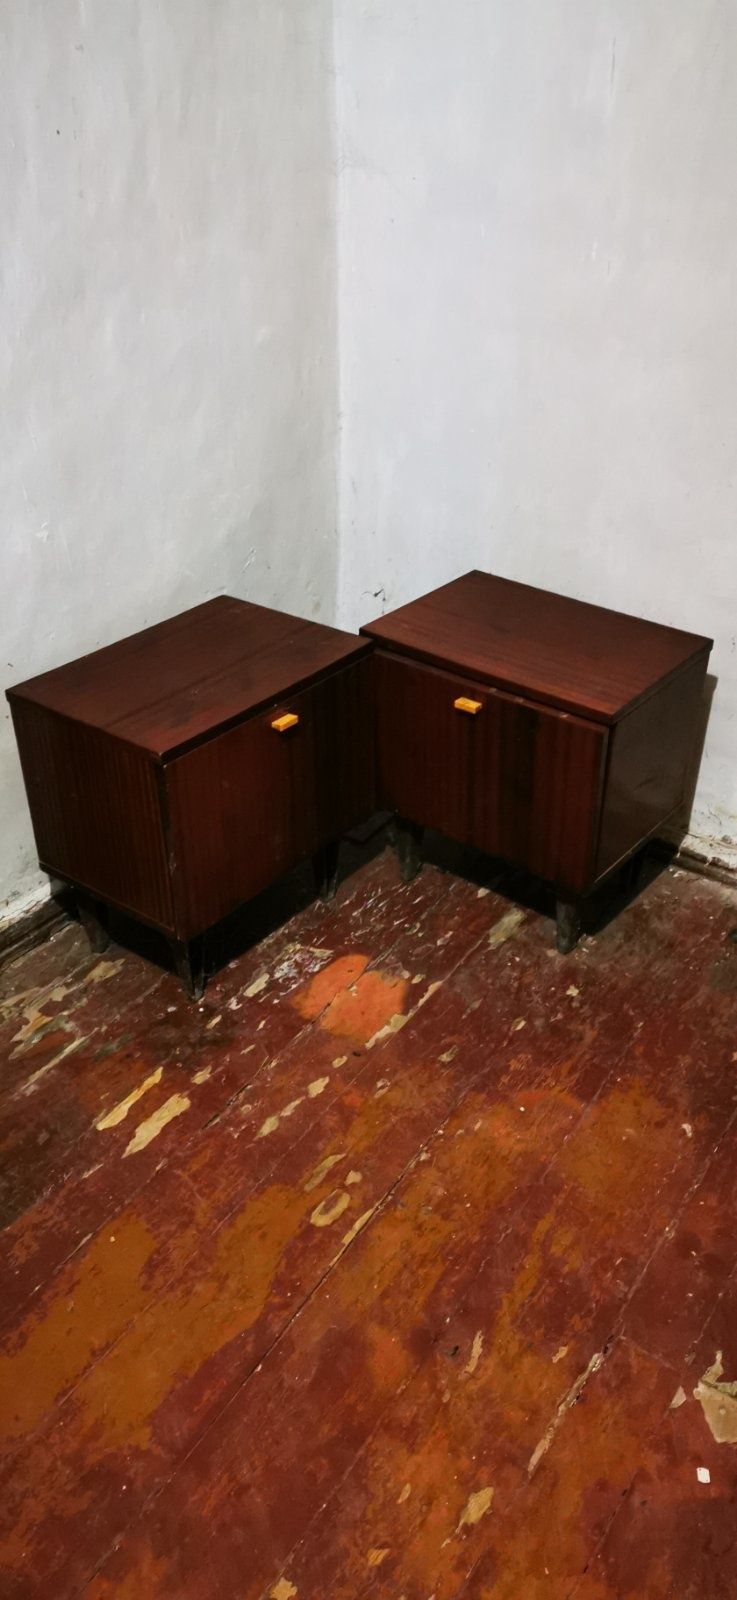 Мебель советская (СССР) - шкаф, сервант, кресла, тумбы,5 стулья